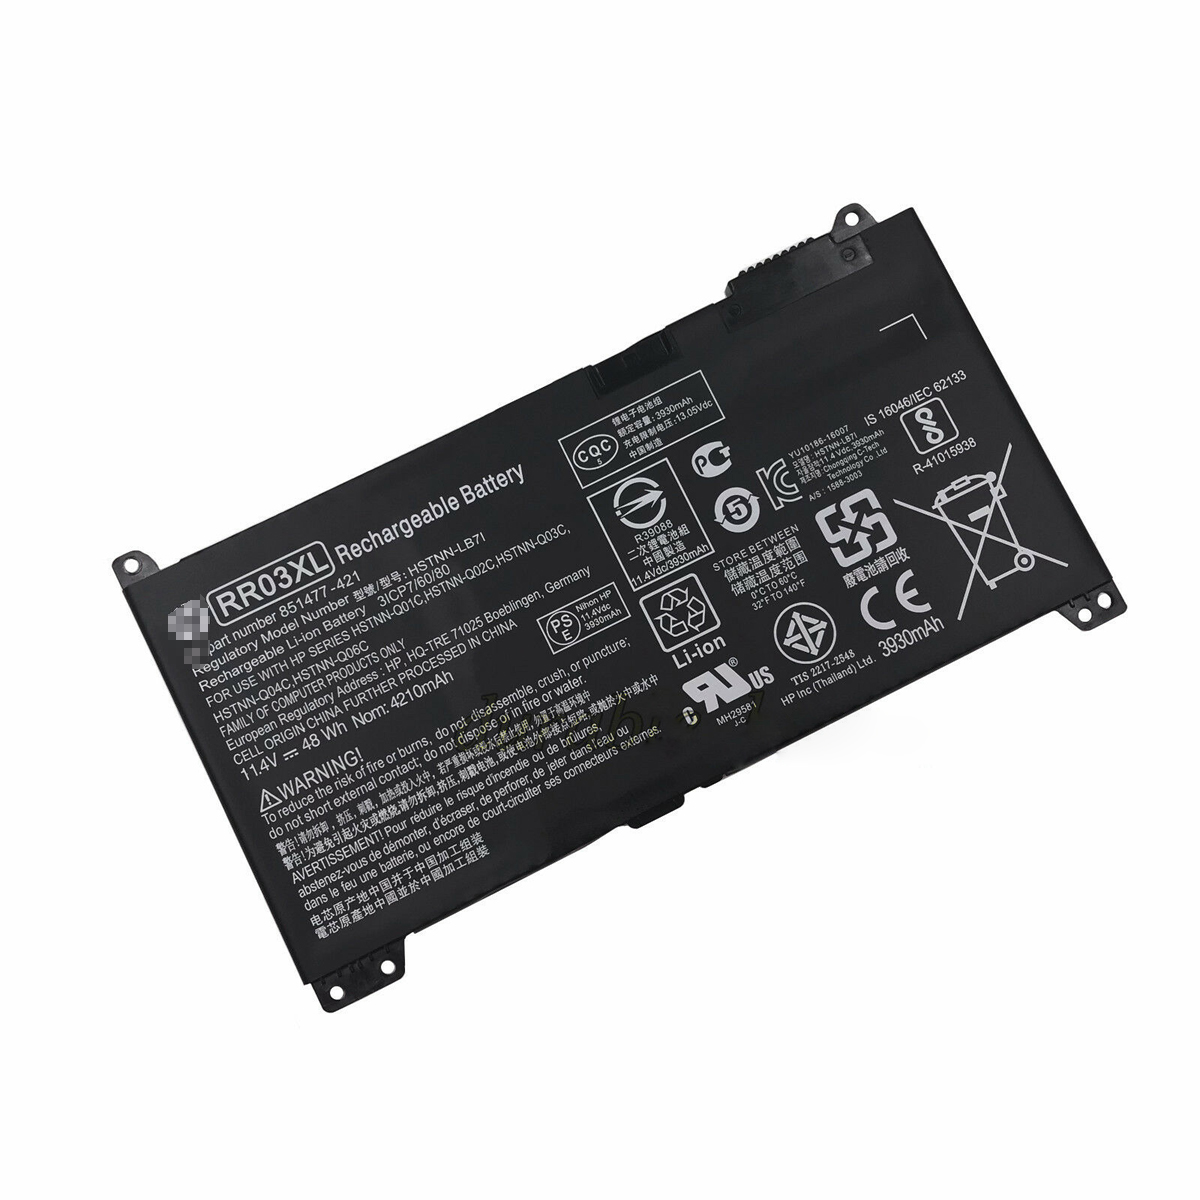 Hp ProBook 450 G4 HSTNN-LB71 RR03XL 48Wh laptop battery